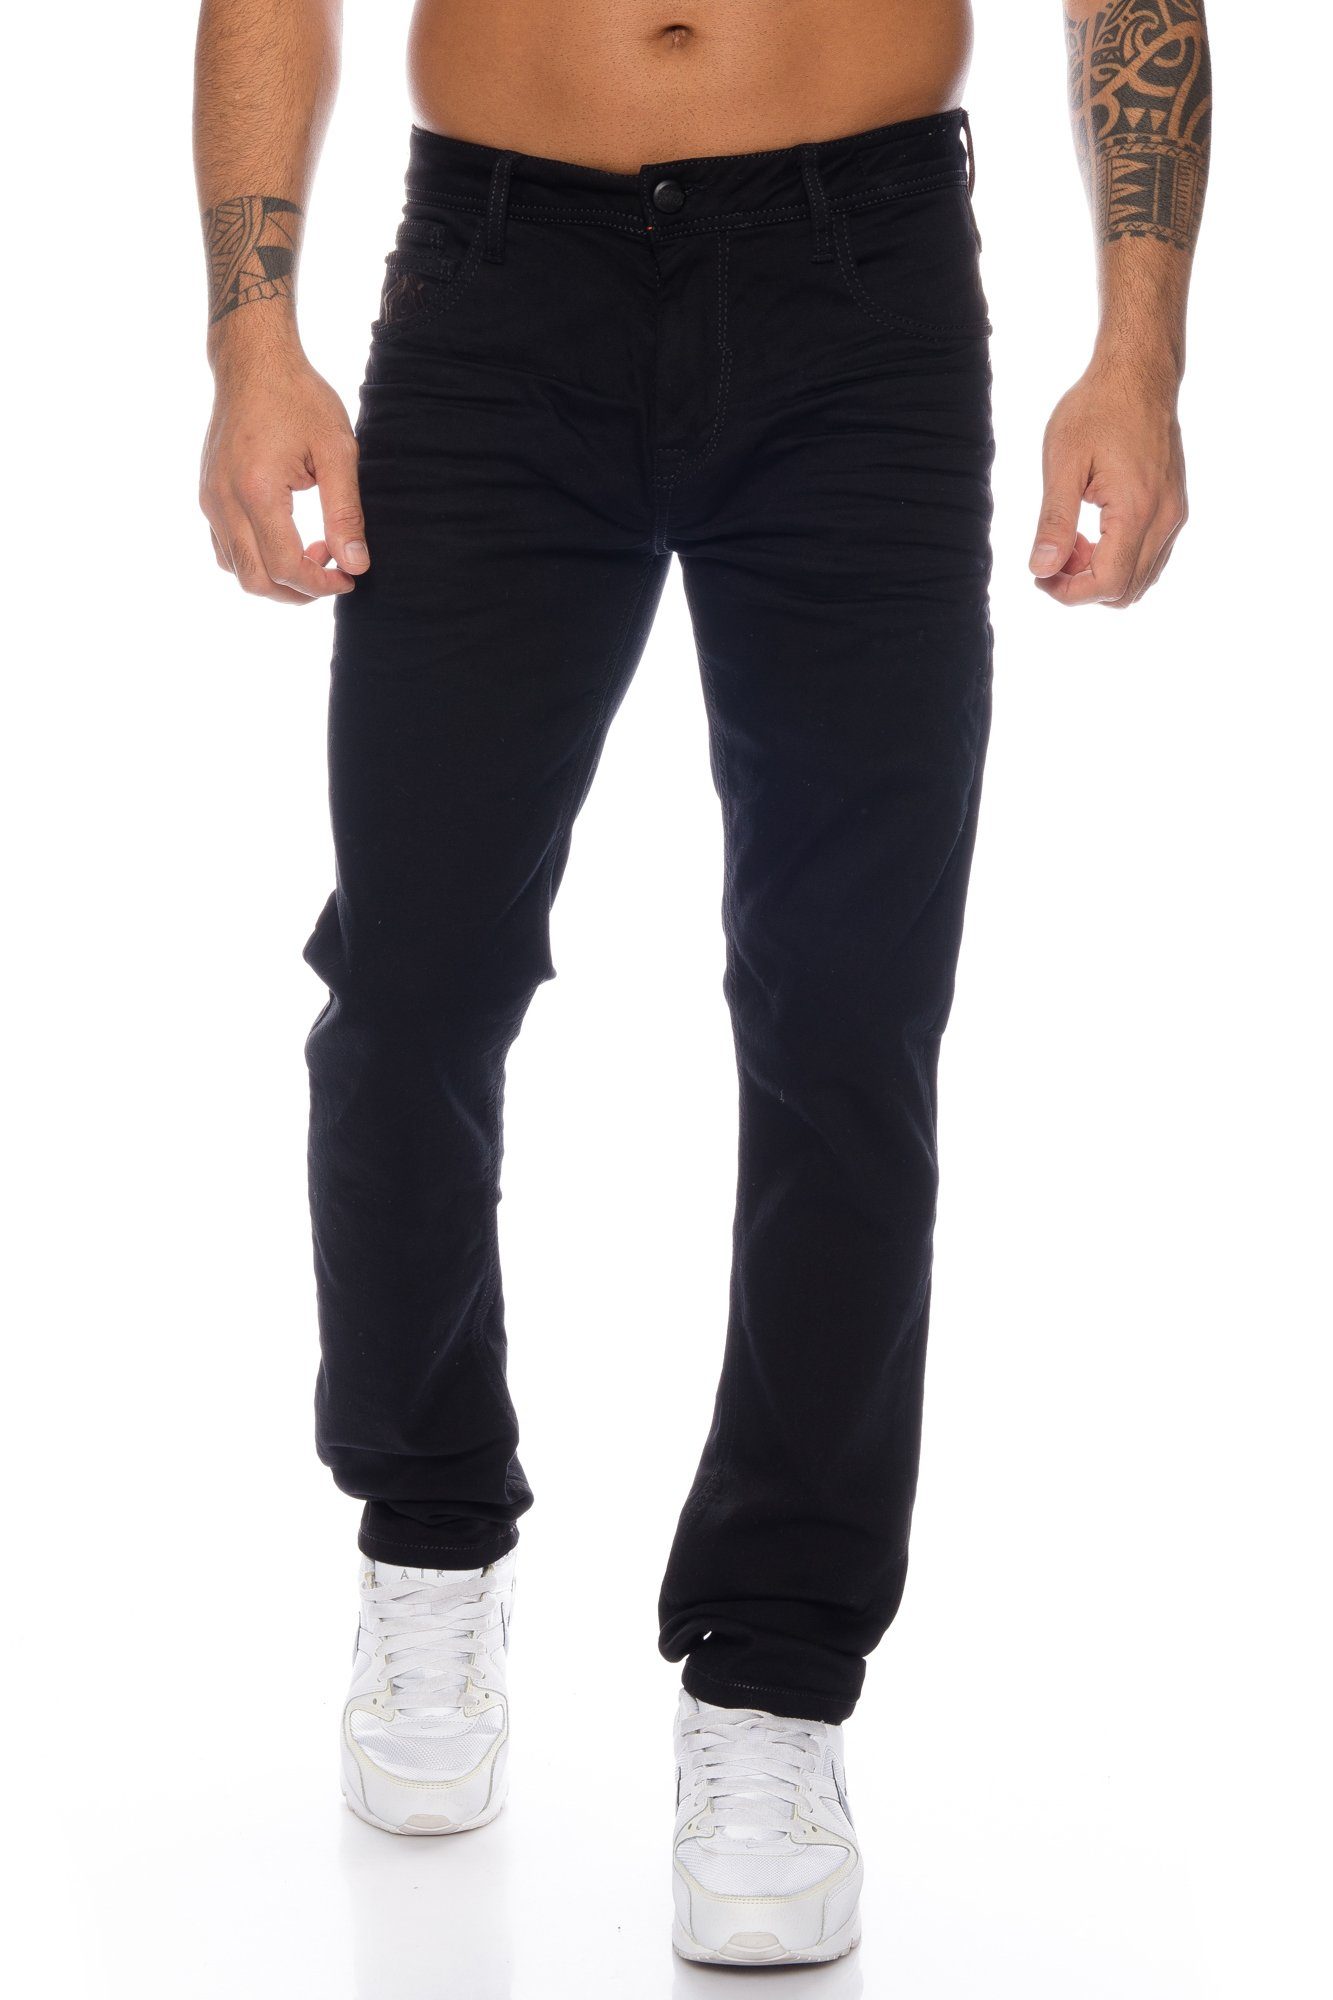 Cipo & Baxx Slim-fit-Jeans Herren Jeans Hose im basic Look mit dezenten dicken Nähten Elastisches Material für angenehmen Tragekomfort